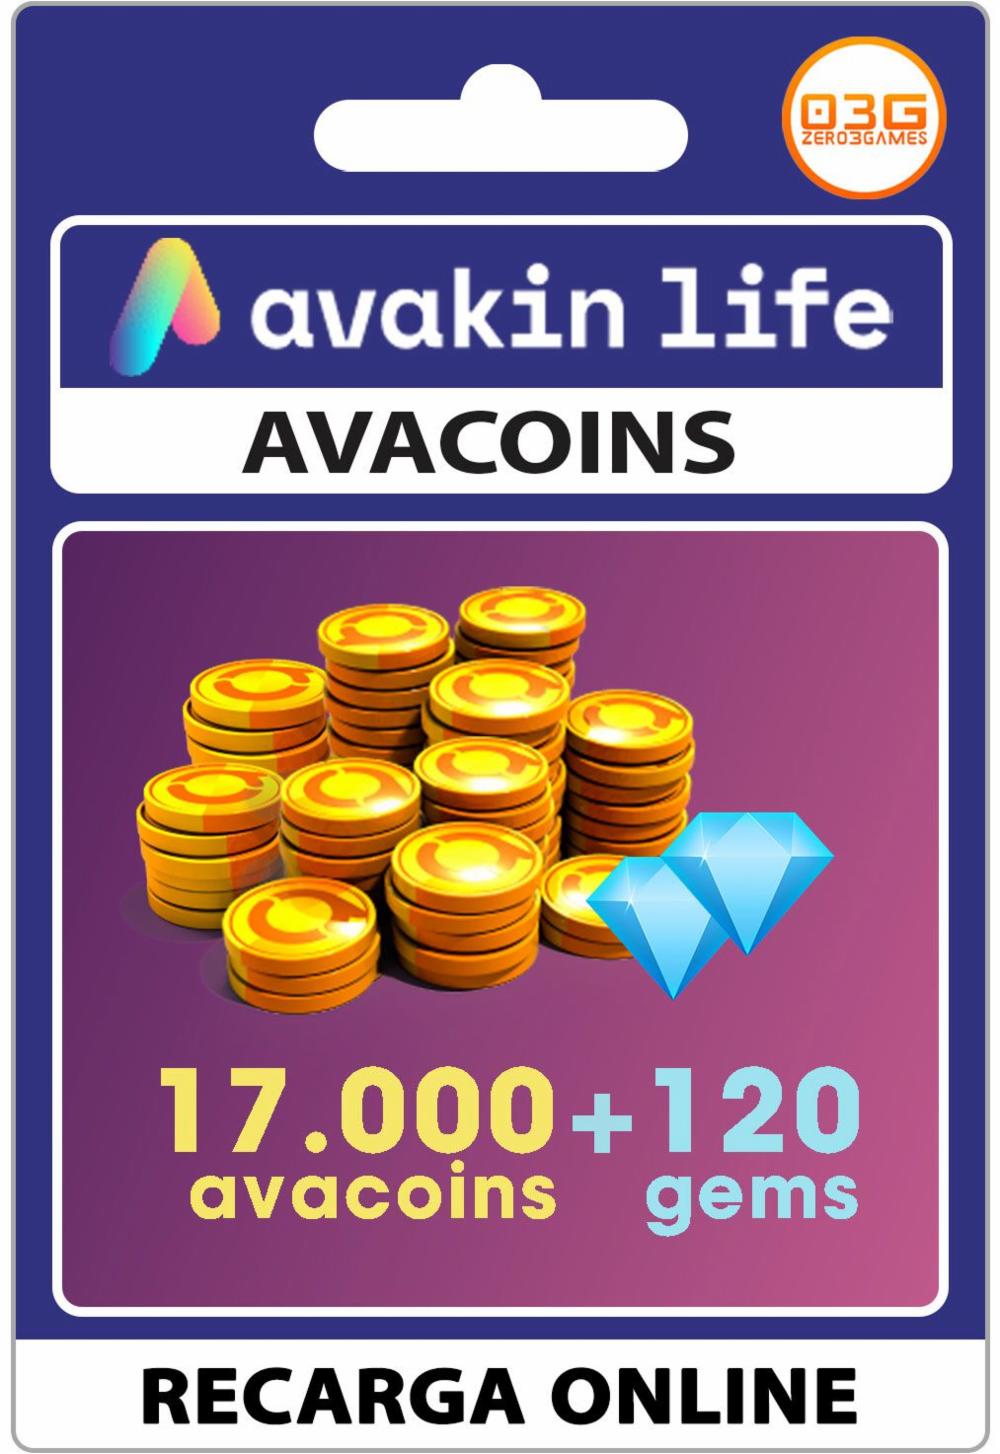 Avakin Life: como ganhar códigos e presentes grátis - CCM